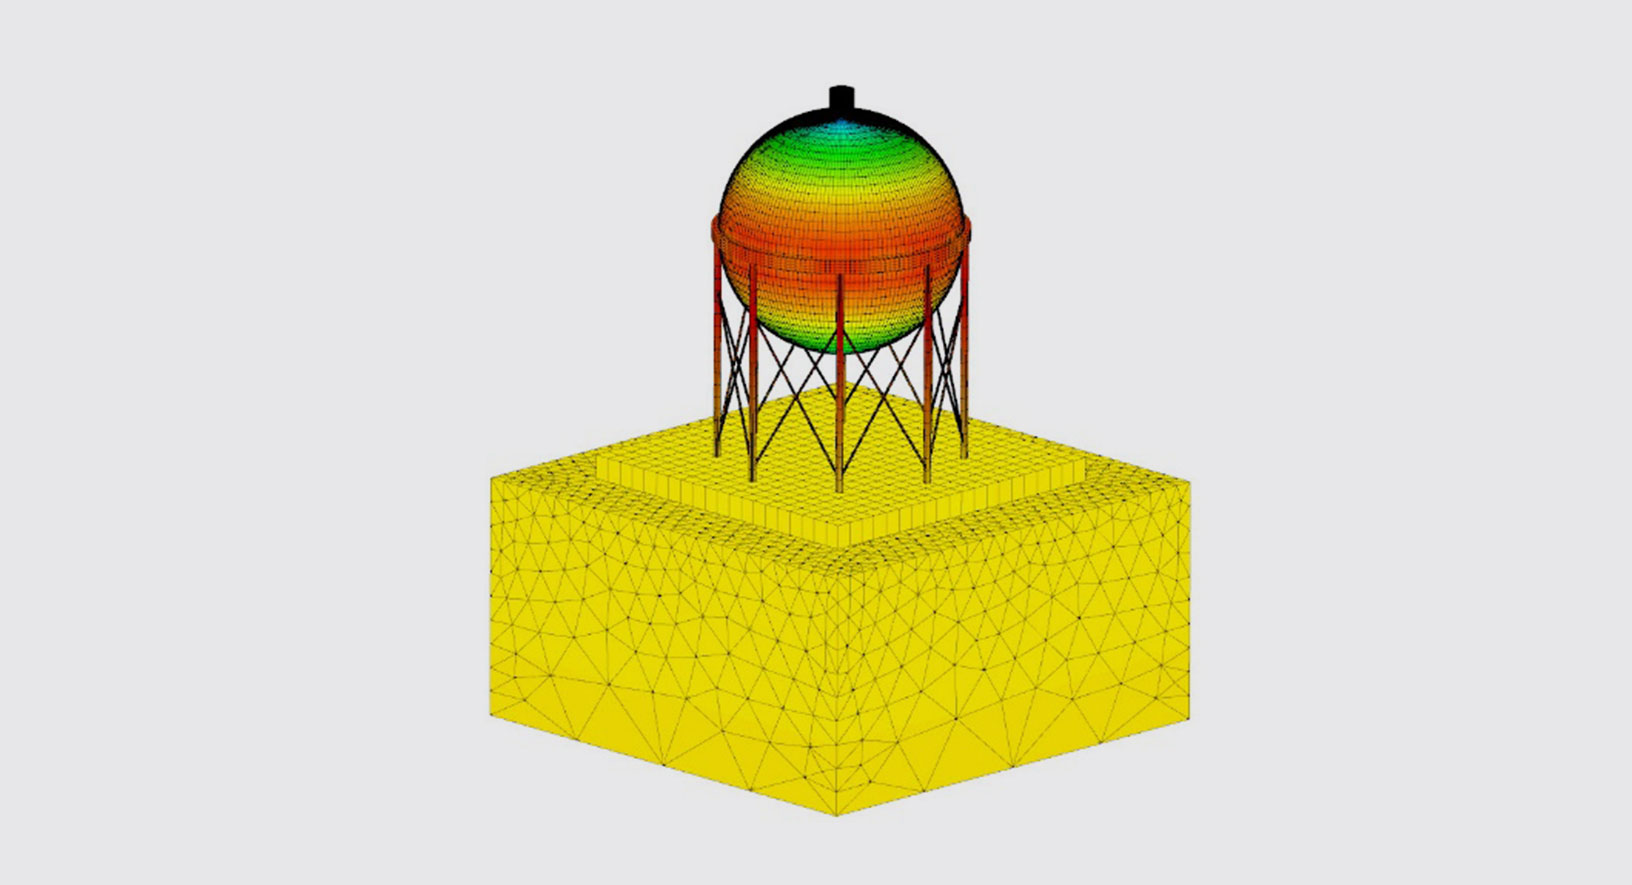 Simulazione multifisica per l'analisi strutturale di una raffineria utilizzando CivilFEM, powered by Marc